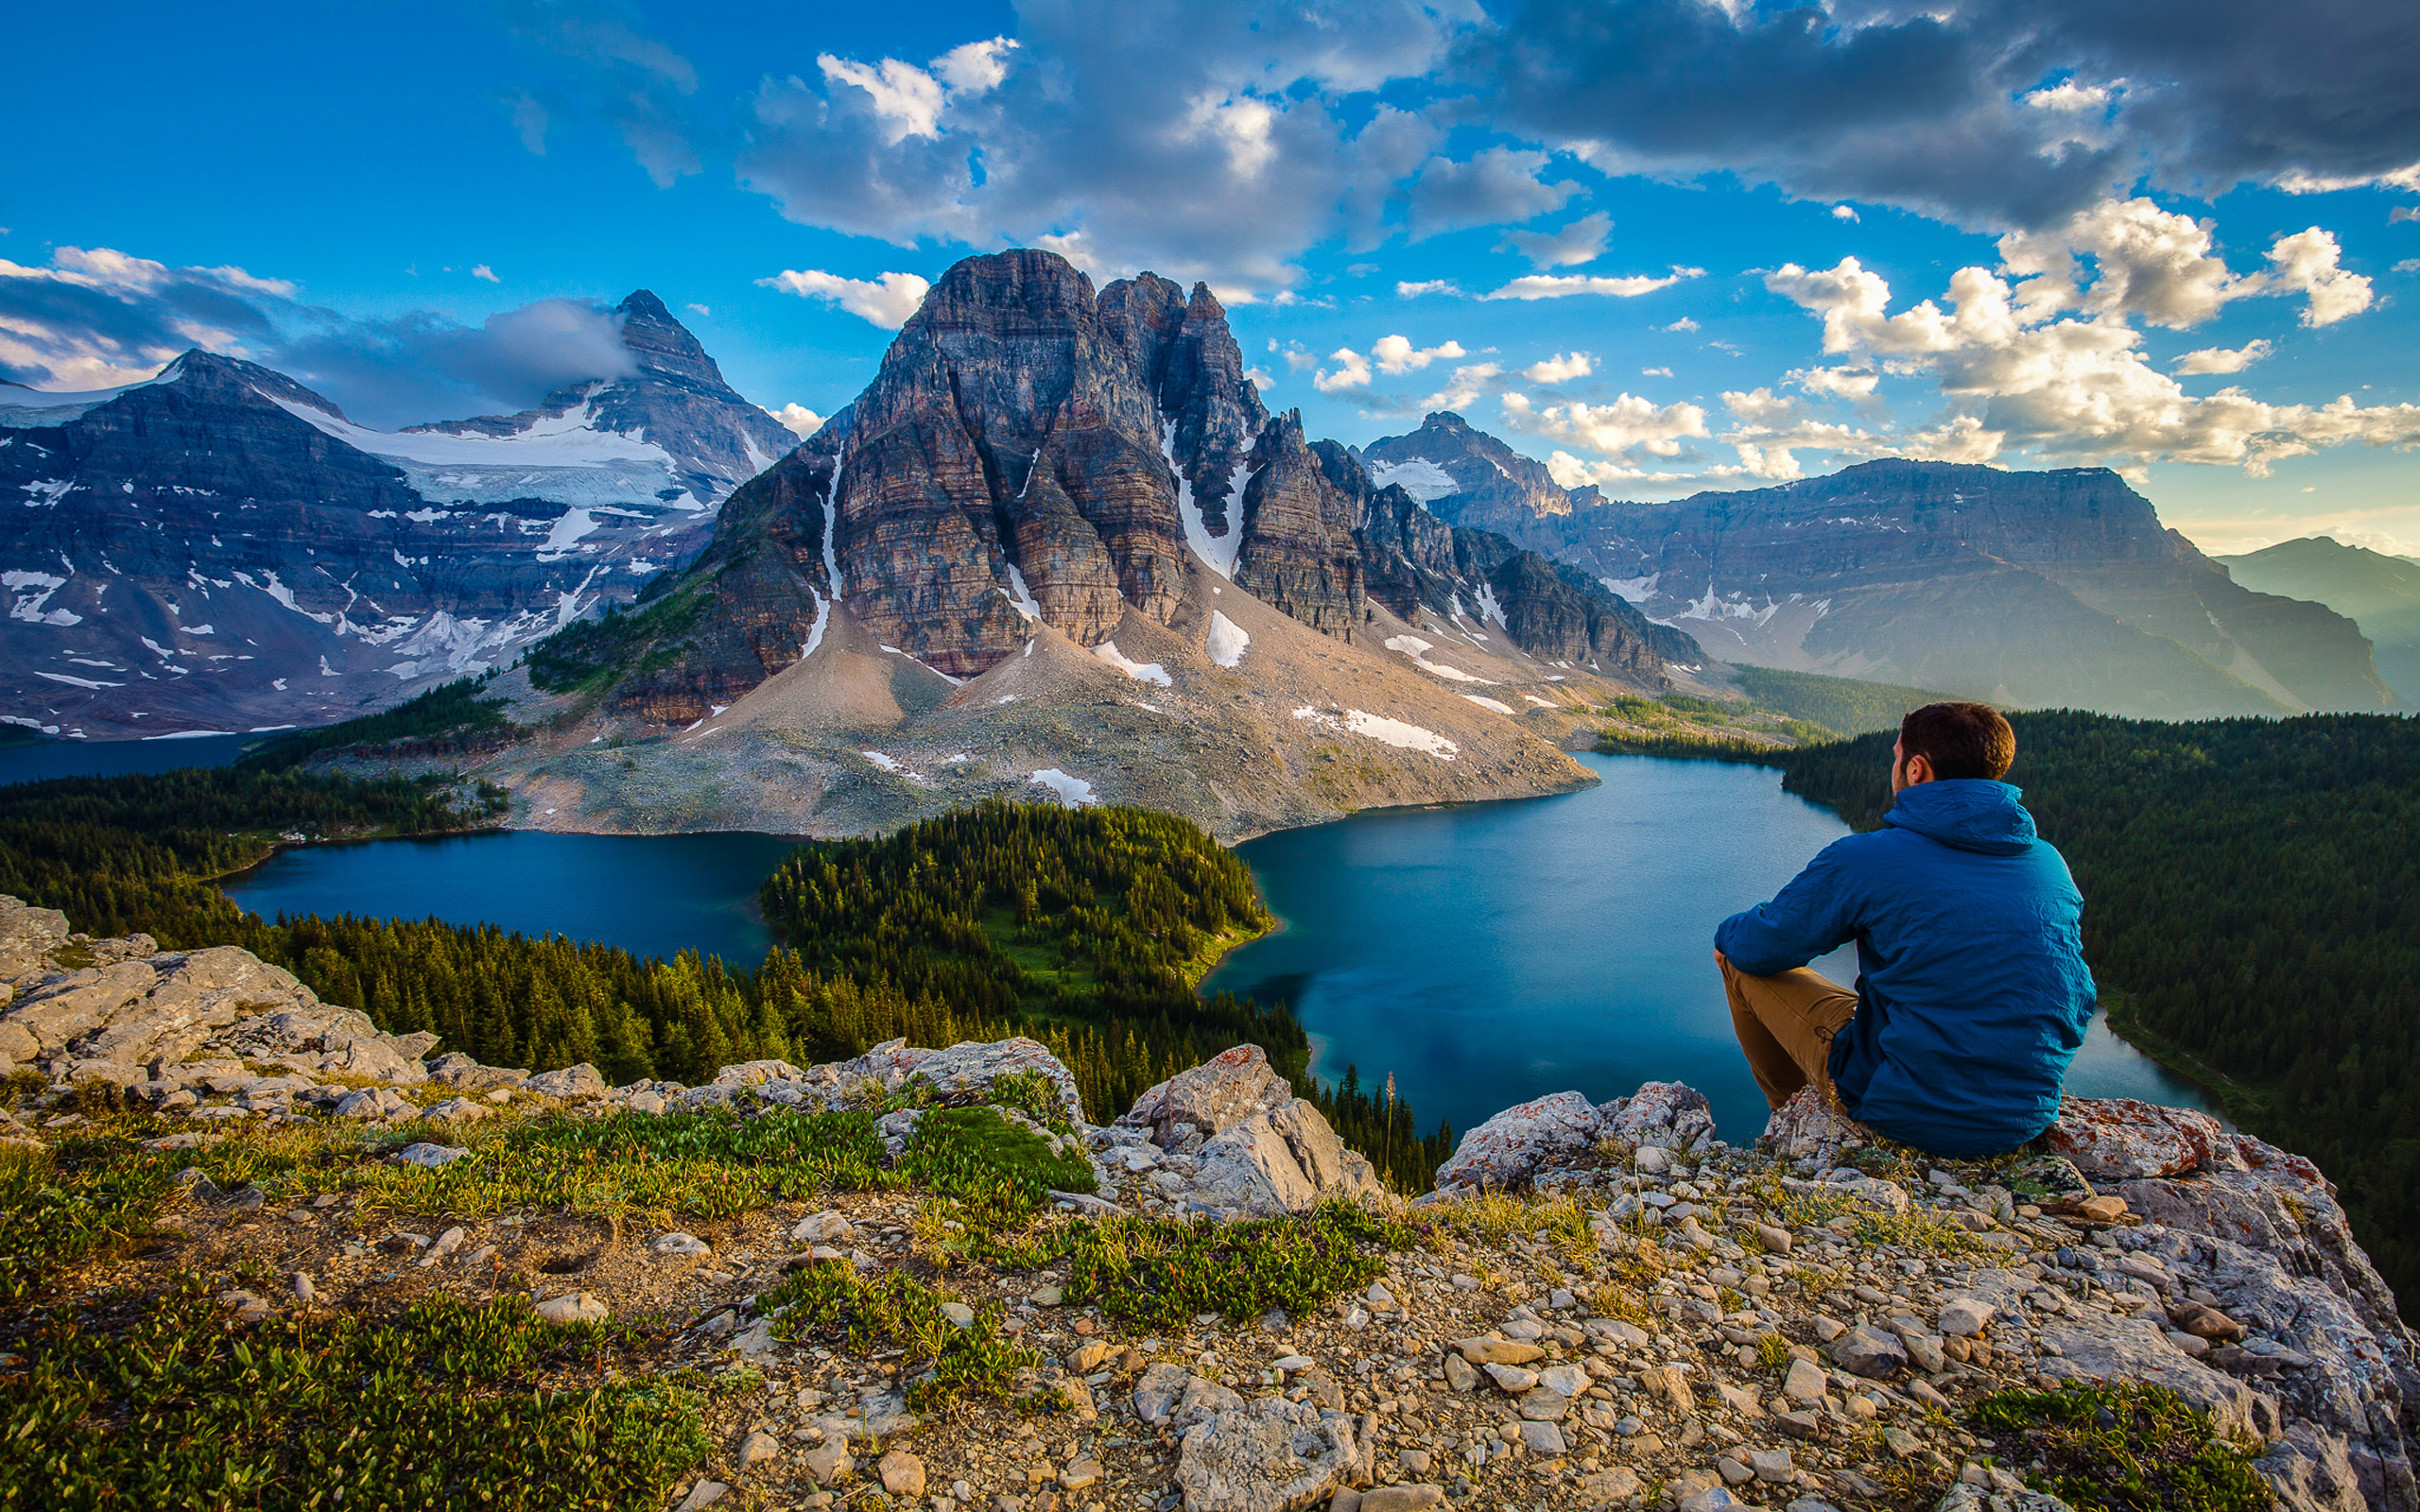 Фото по картинке. Гора ассинибоайн, Британская Колумбия, Канада. Природа. Человек на фоне гор. Человек и природа.